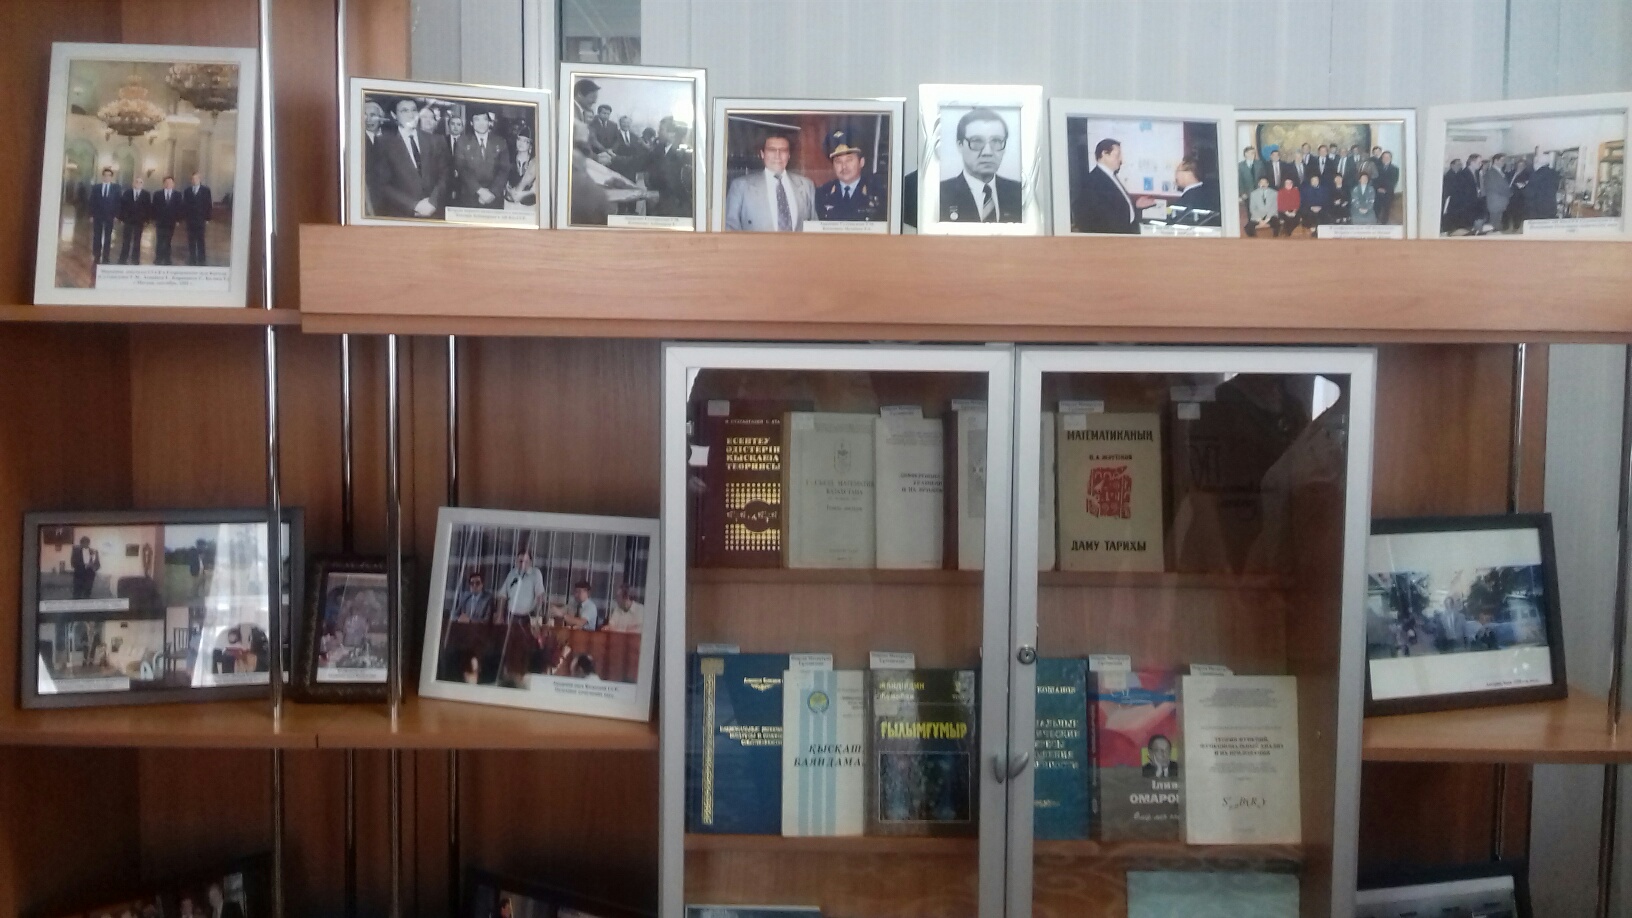 Ұлттық кітапханадағы залға көрнекті ғалым Өмірзақ Сұлтанғазиннің есімі берілді